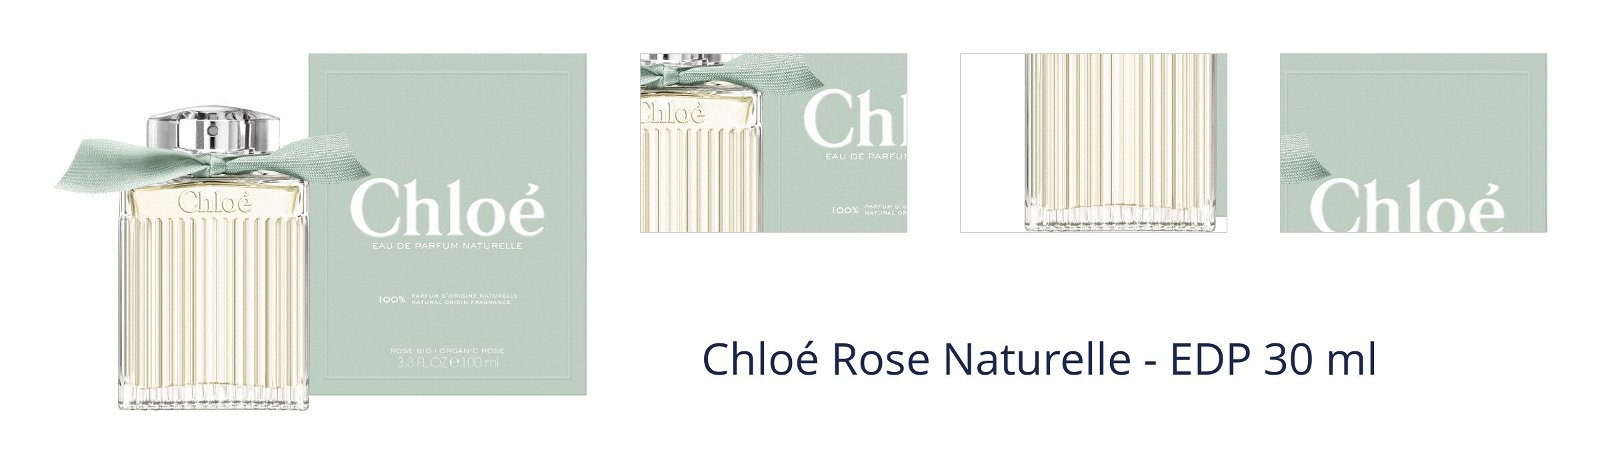 Chloé Rose Naturelle - EDP 30 ml 1